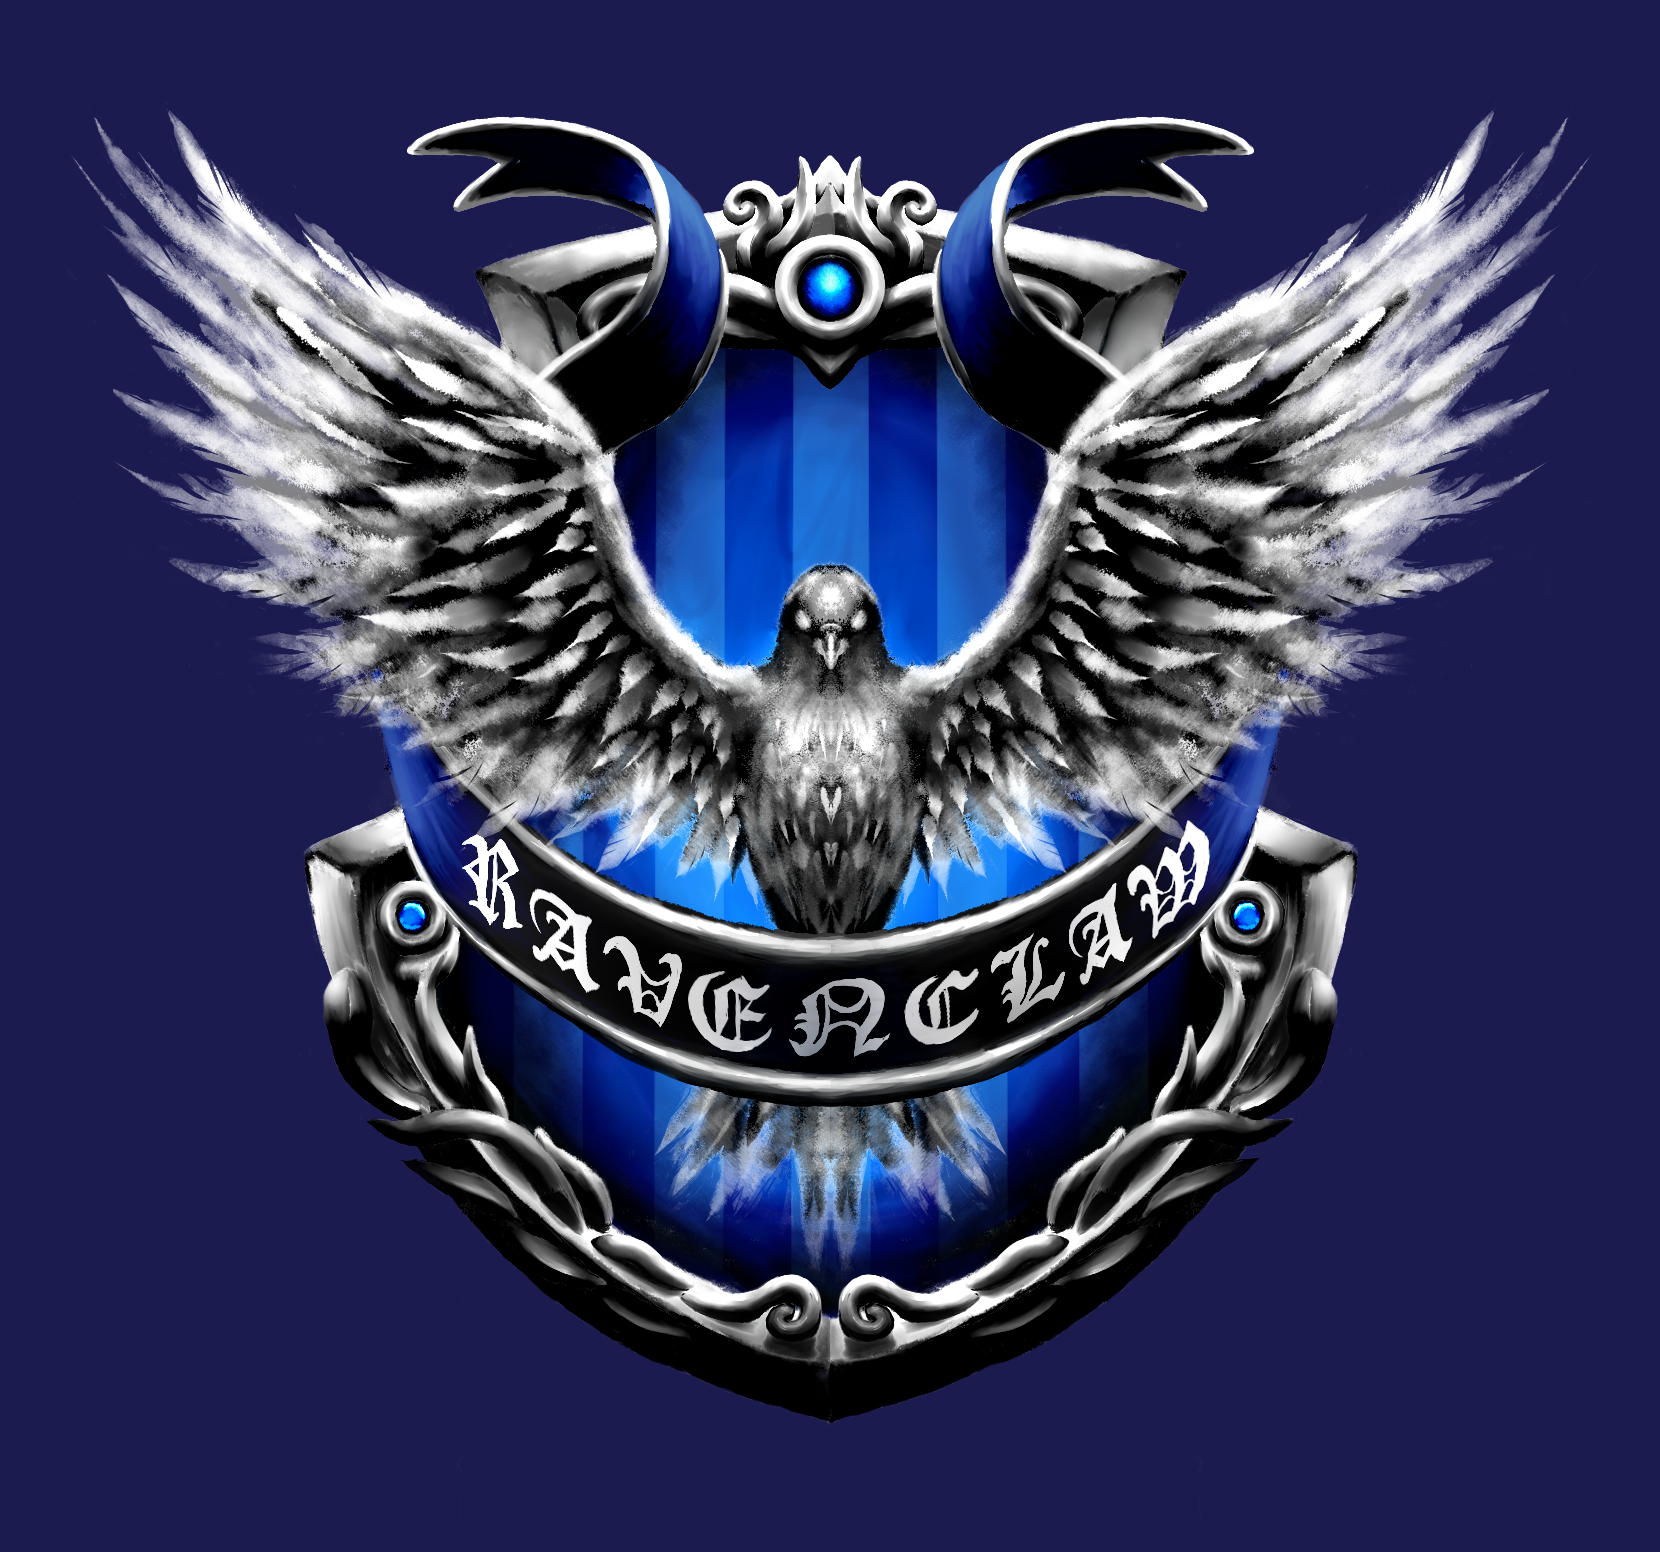 Harry Potter - Ravenclaw (Custom Emblem) by ZephyrXenonymous on DeviantArt